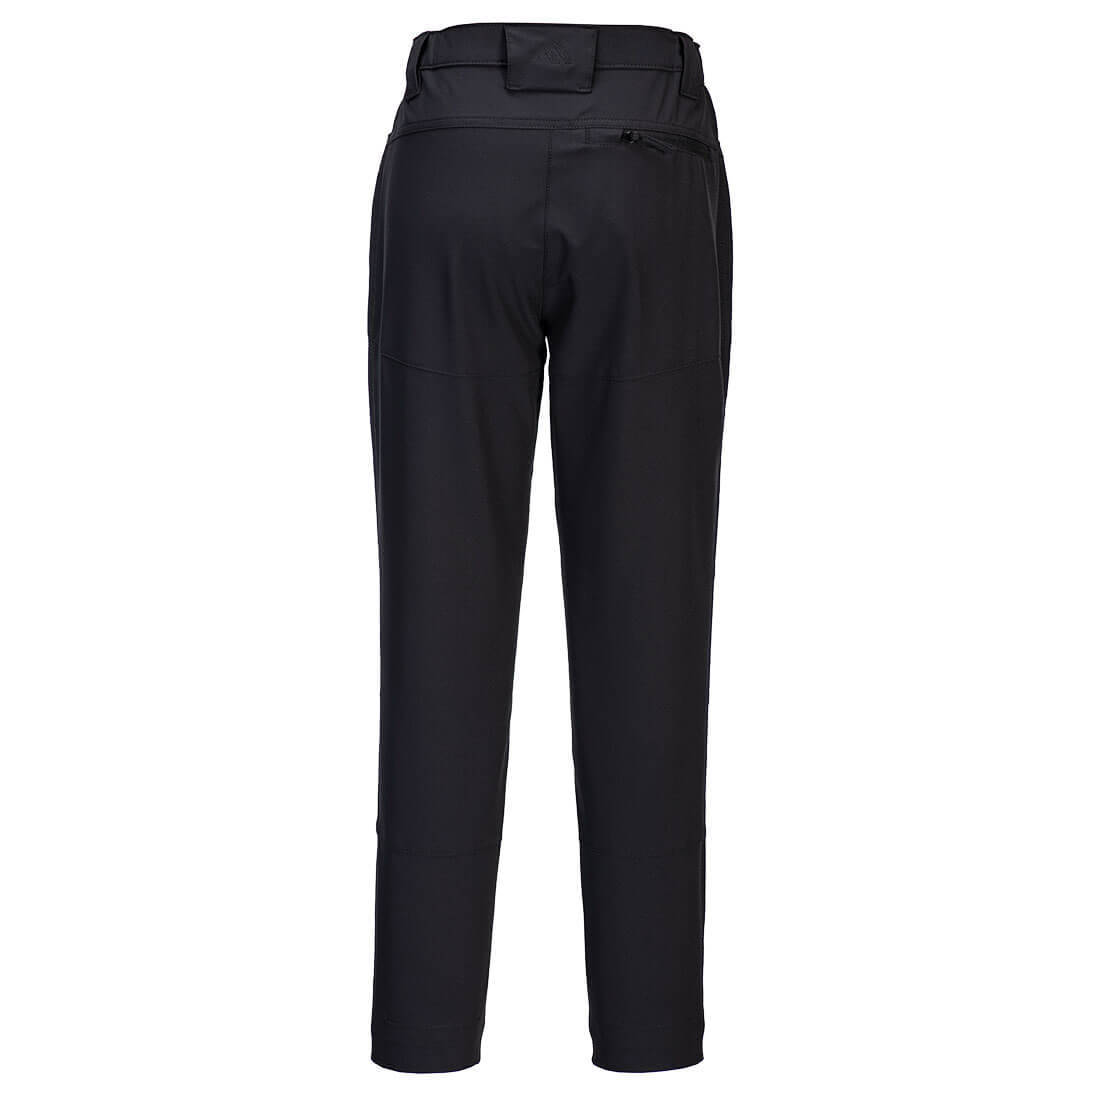 Pantalon élastique de travail WX2 pour femmes - Les vêtements de protection